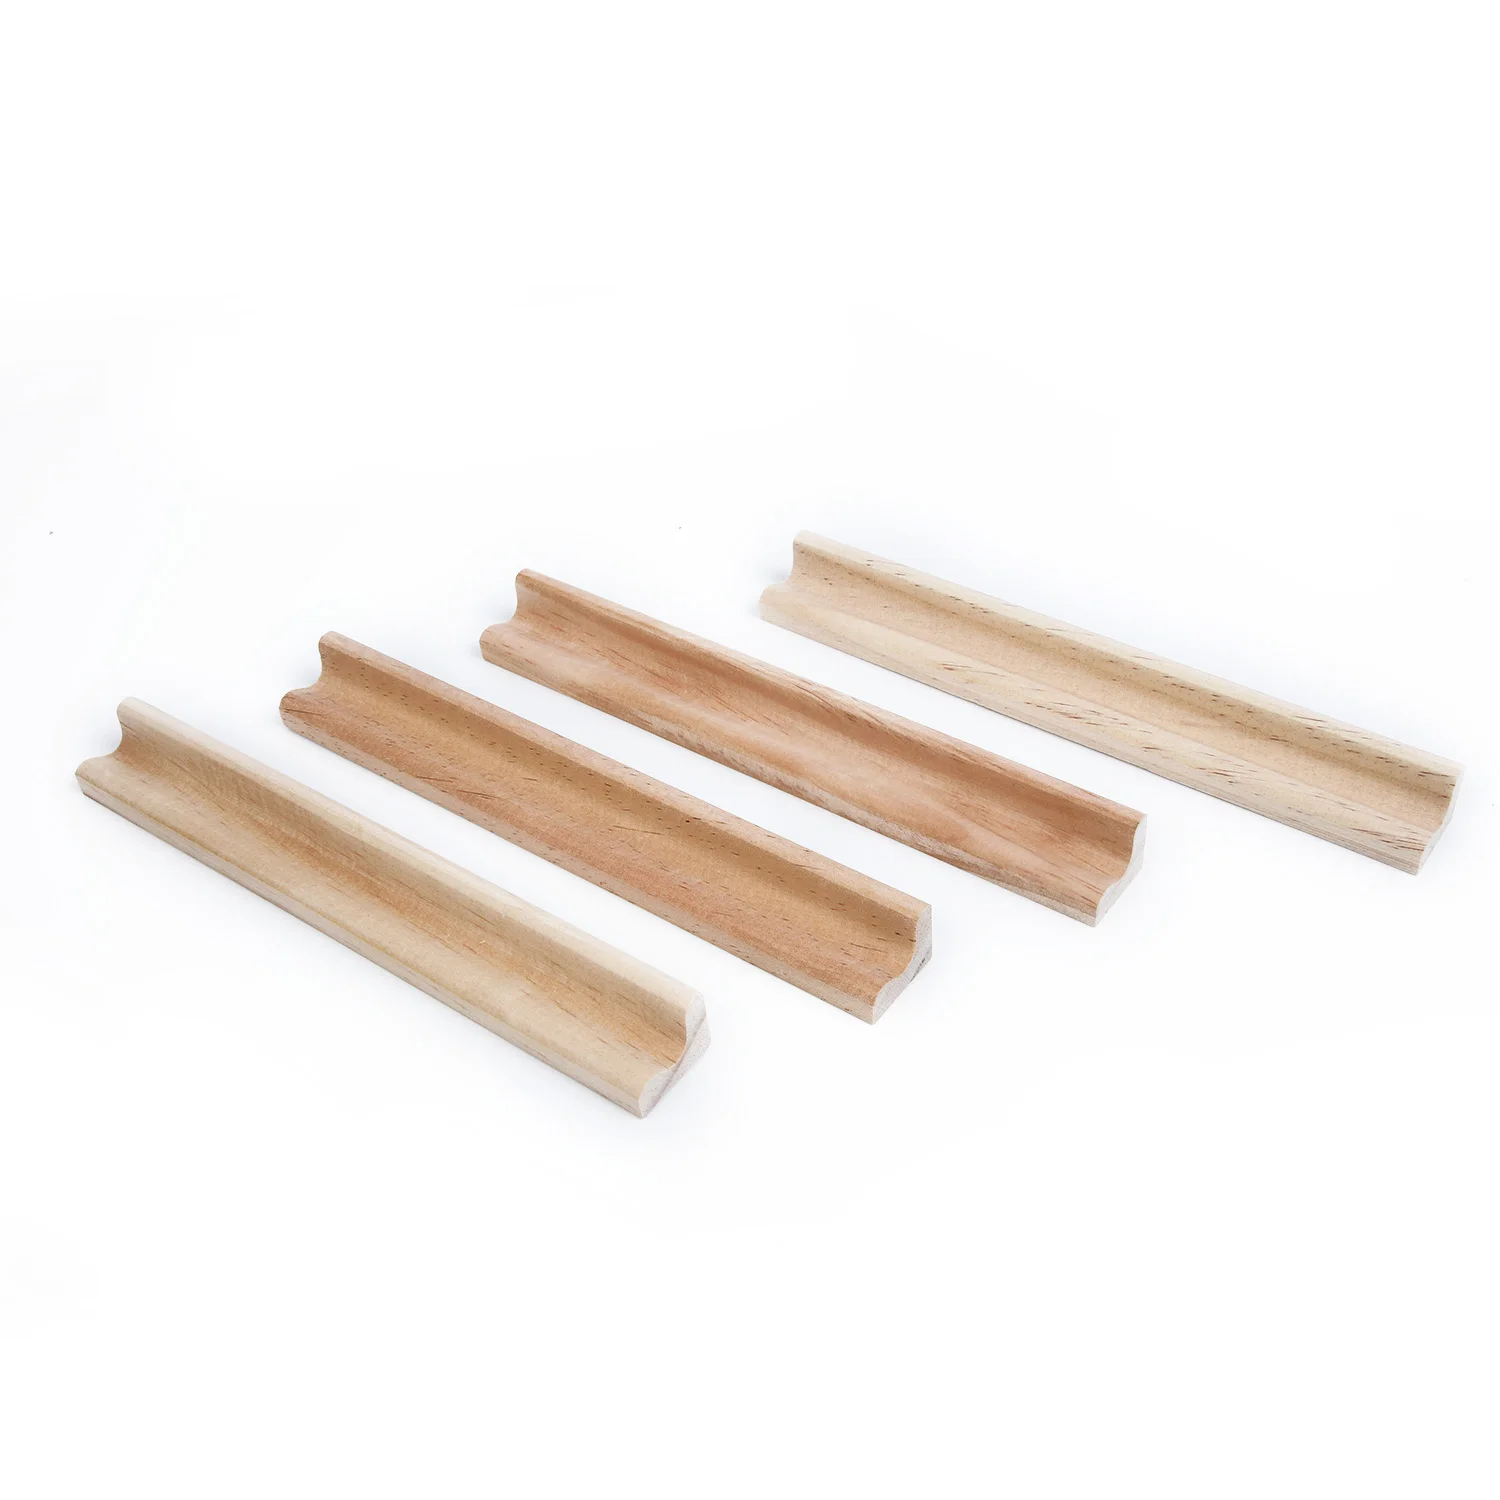 4 шт. деревянный стеллаж для плитки деревянный скрэббл номера замена плитки стенд ремесла Великобритании